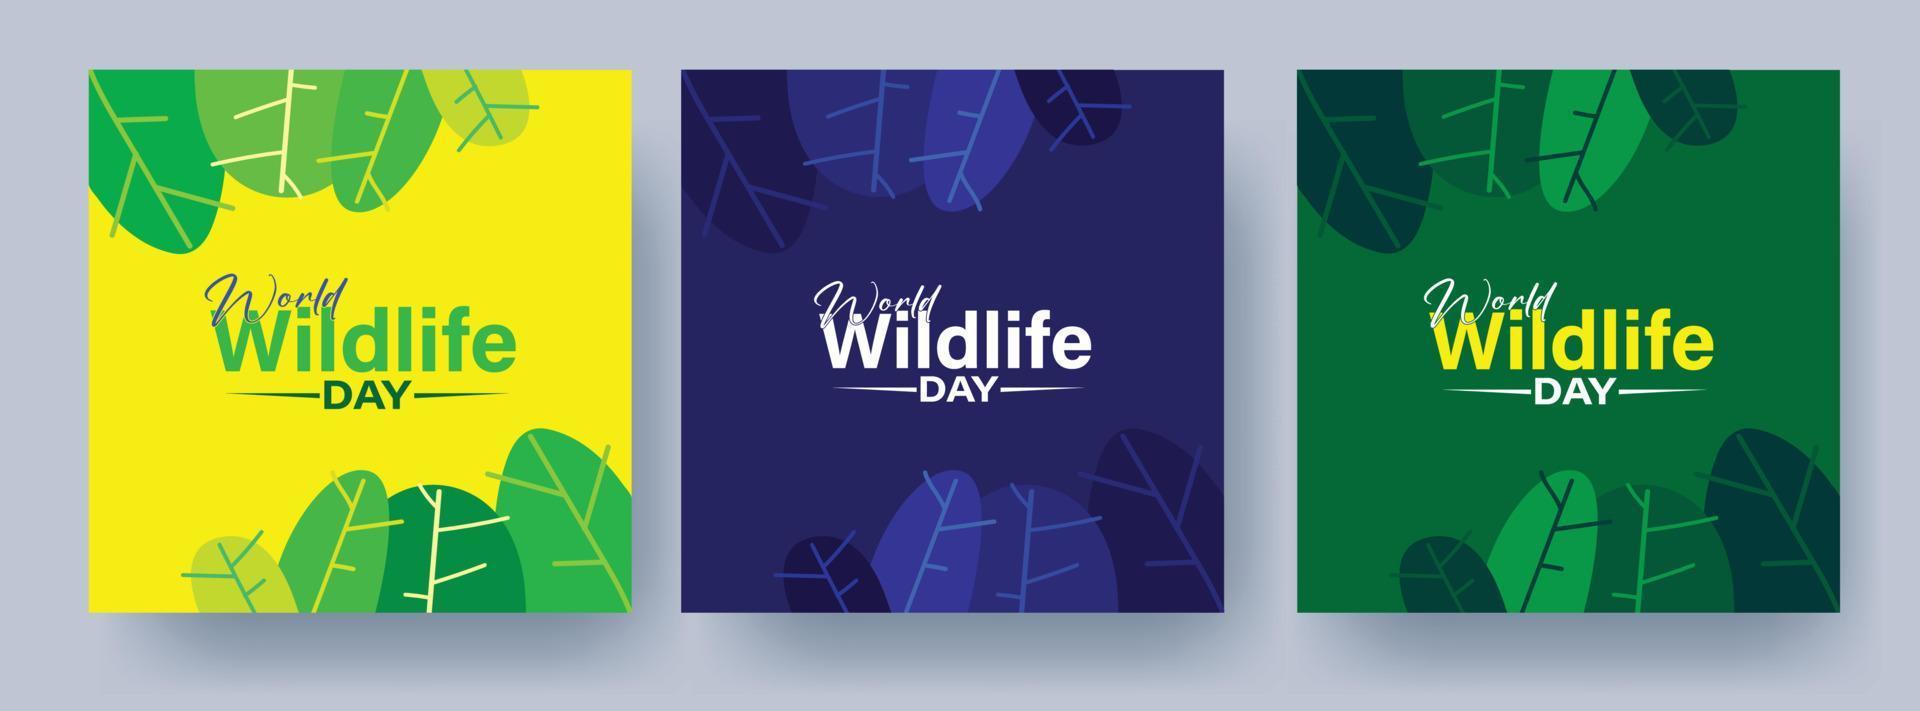 Welttierschutztag mit Wald, Vektormnemonik-Designkonzept, für Poster, Banner, Hintergrund, Kampagne und Gruß vektor